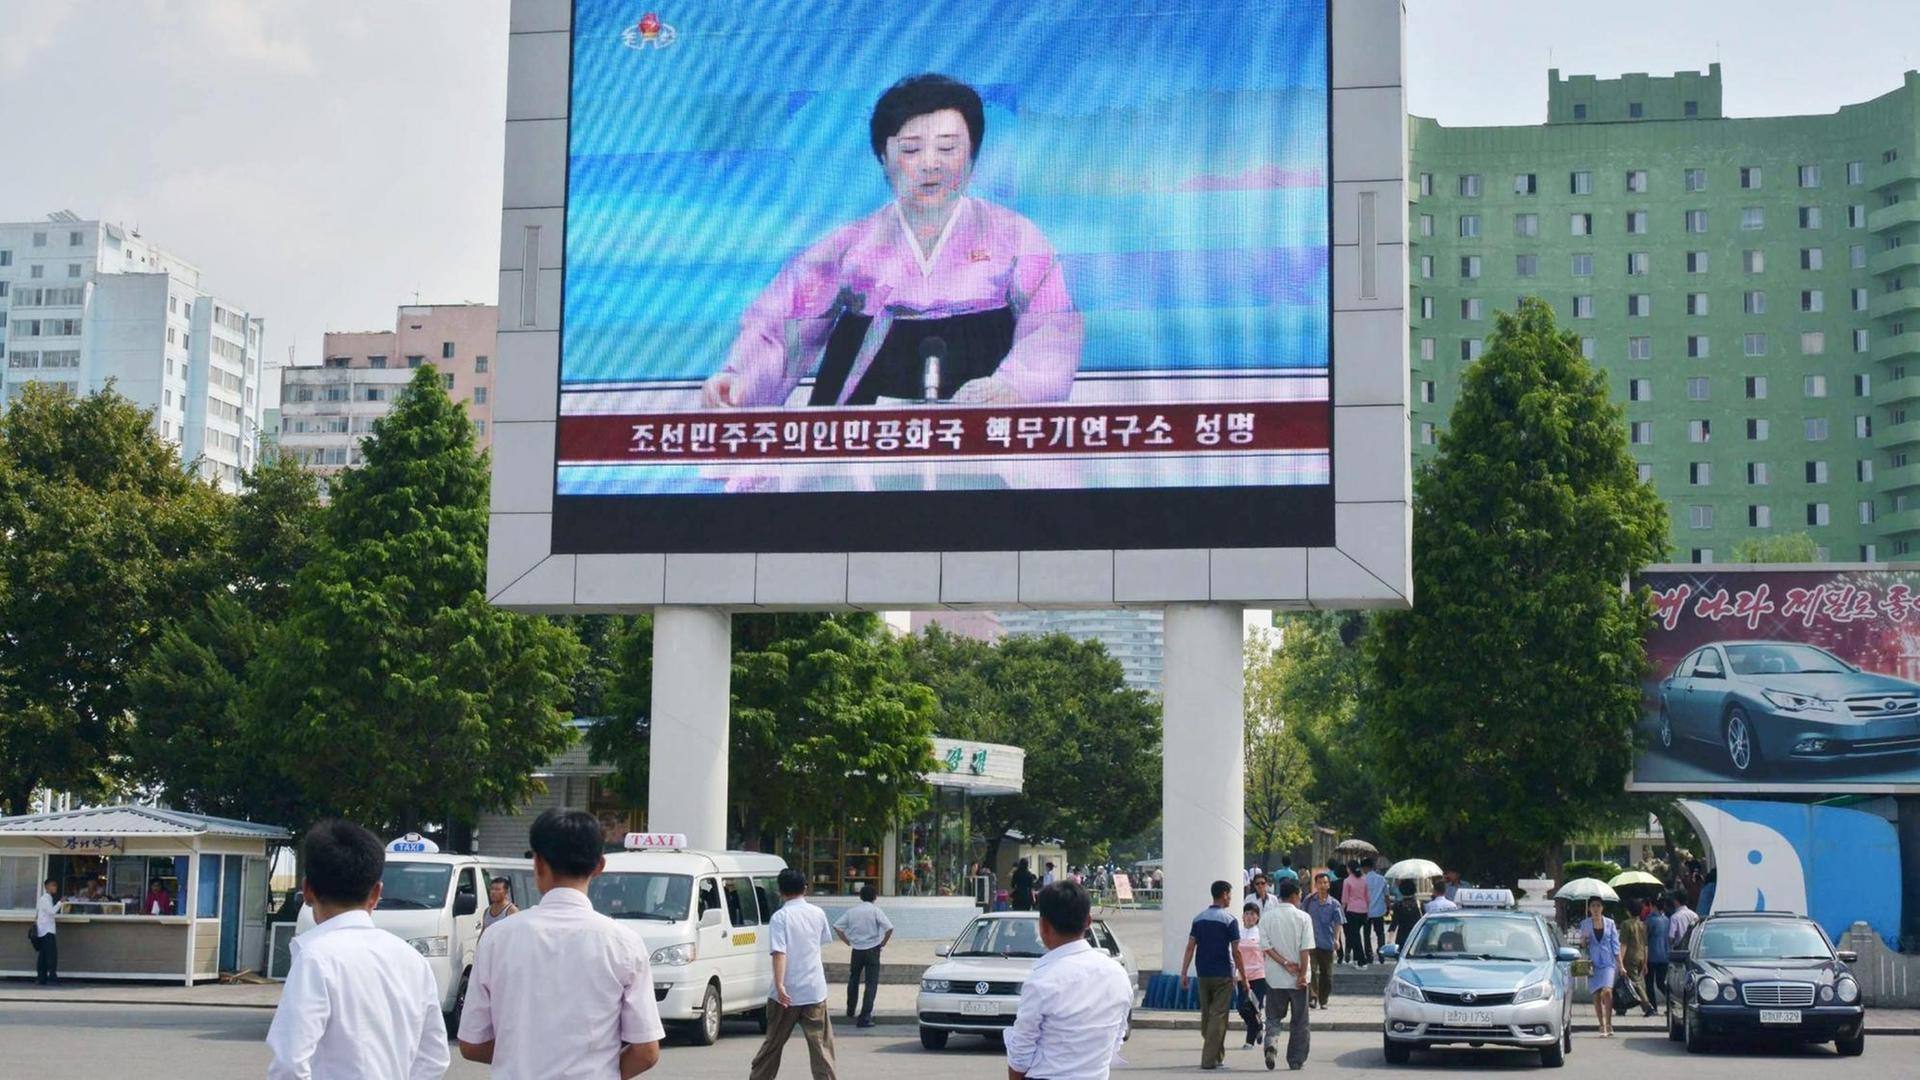 Eine Sprecherin des staatlichen Fernsehens in Nordkorea berichtet über den fünften Atom-Test des Landes. Sie ist auf einem großen Bildschirm vor der Pjöngjang Station zu sehen.